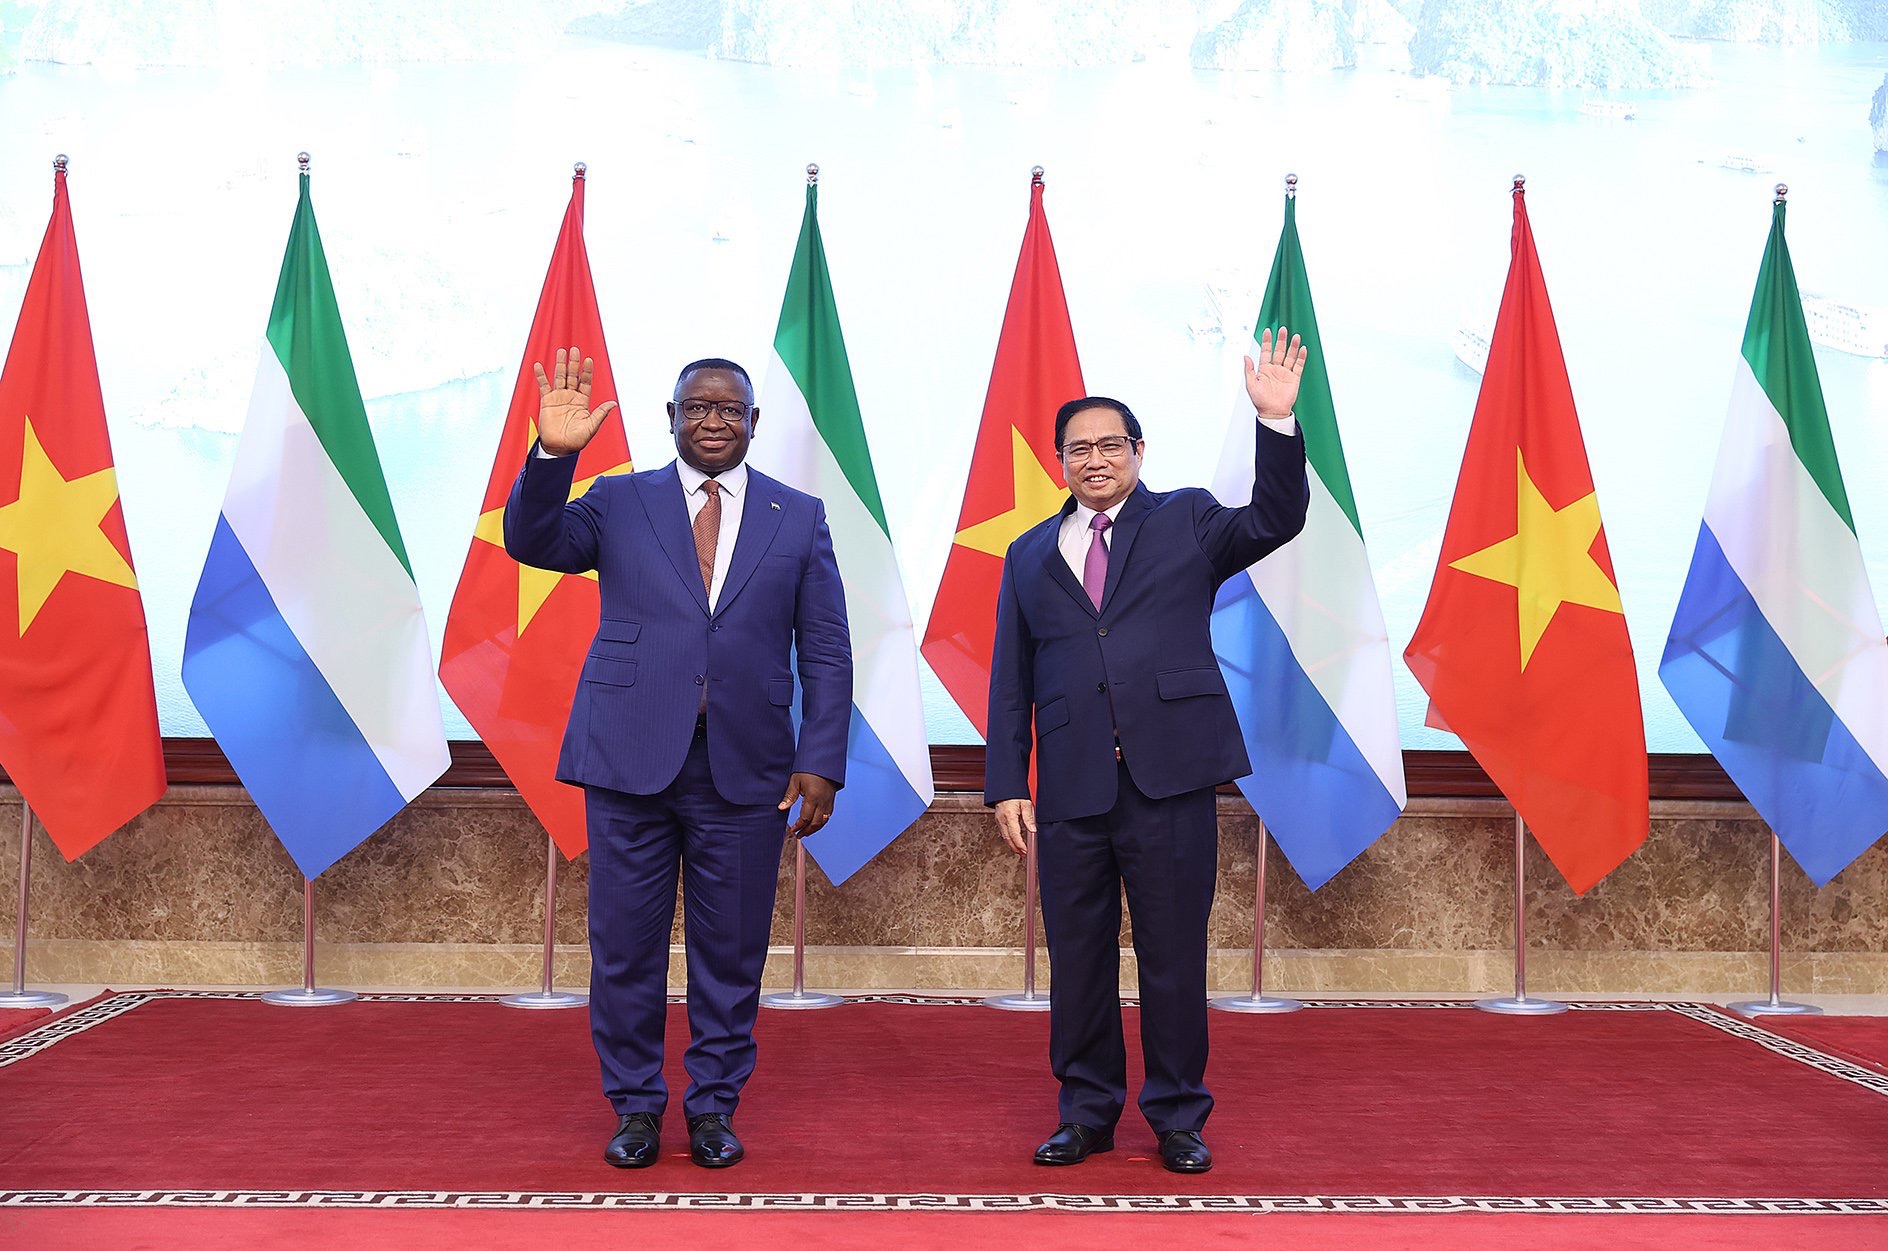 Tổng thống Sierra Leone thăm chính thức Việt Nam, 2 bên ký kết 3 văn kiện hợp tác - Ảnh 2.